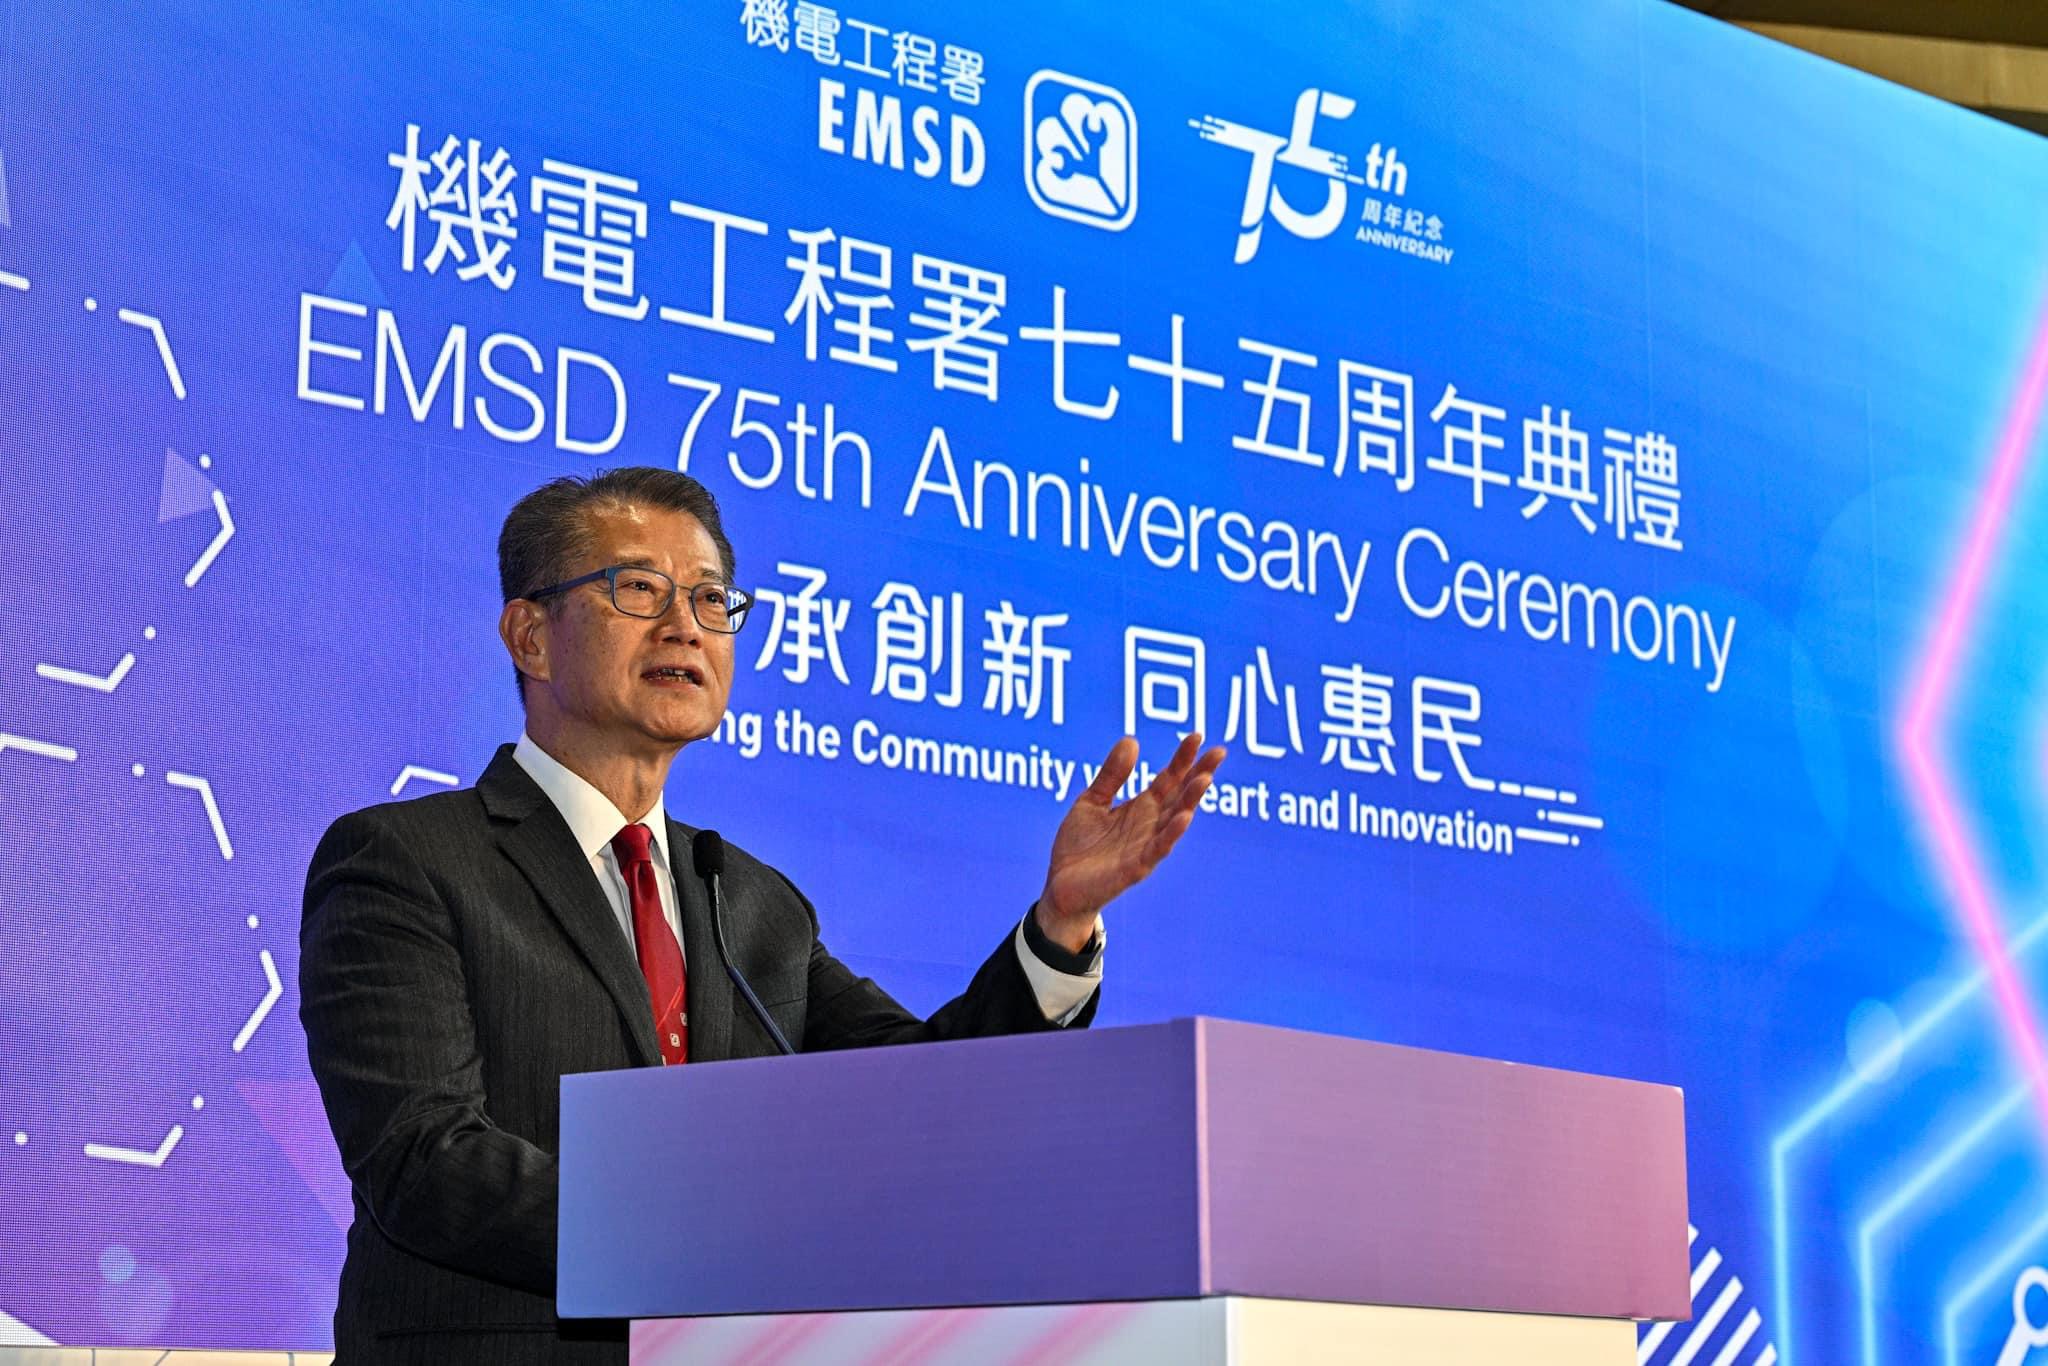 財政司司長陳茂波先生為機電工程署七十五周年典禮擔任主禮嘉賓並致詞。